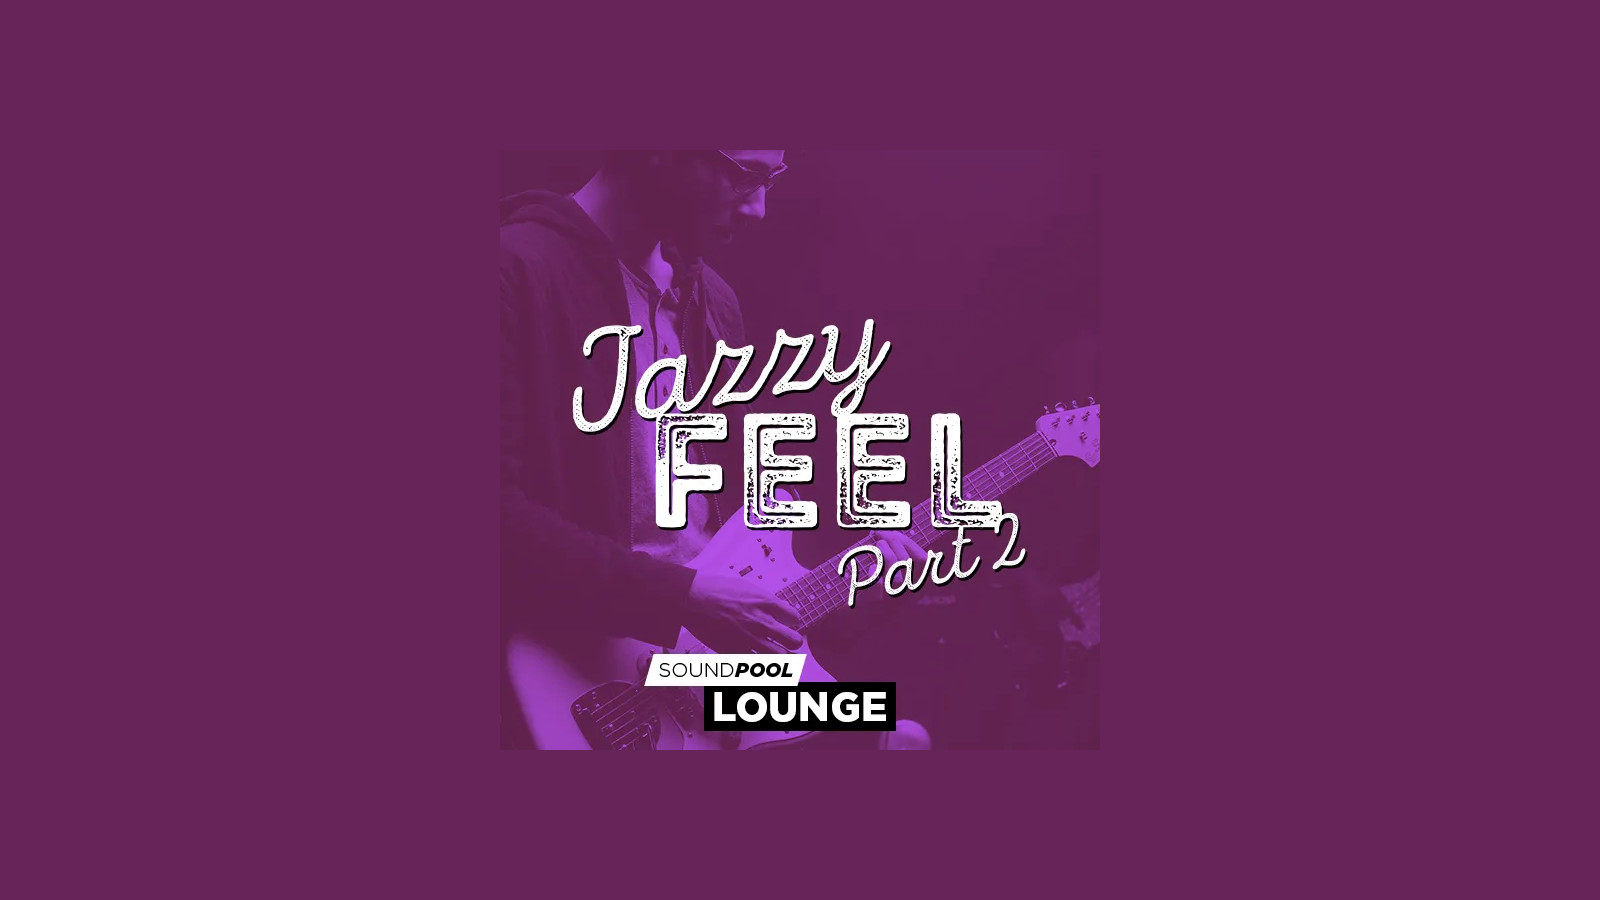 MAGIX Soundpool Jazzy Feel Part 2 ProducerPlanet CD Key 5.65 $